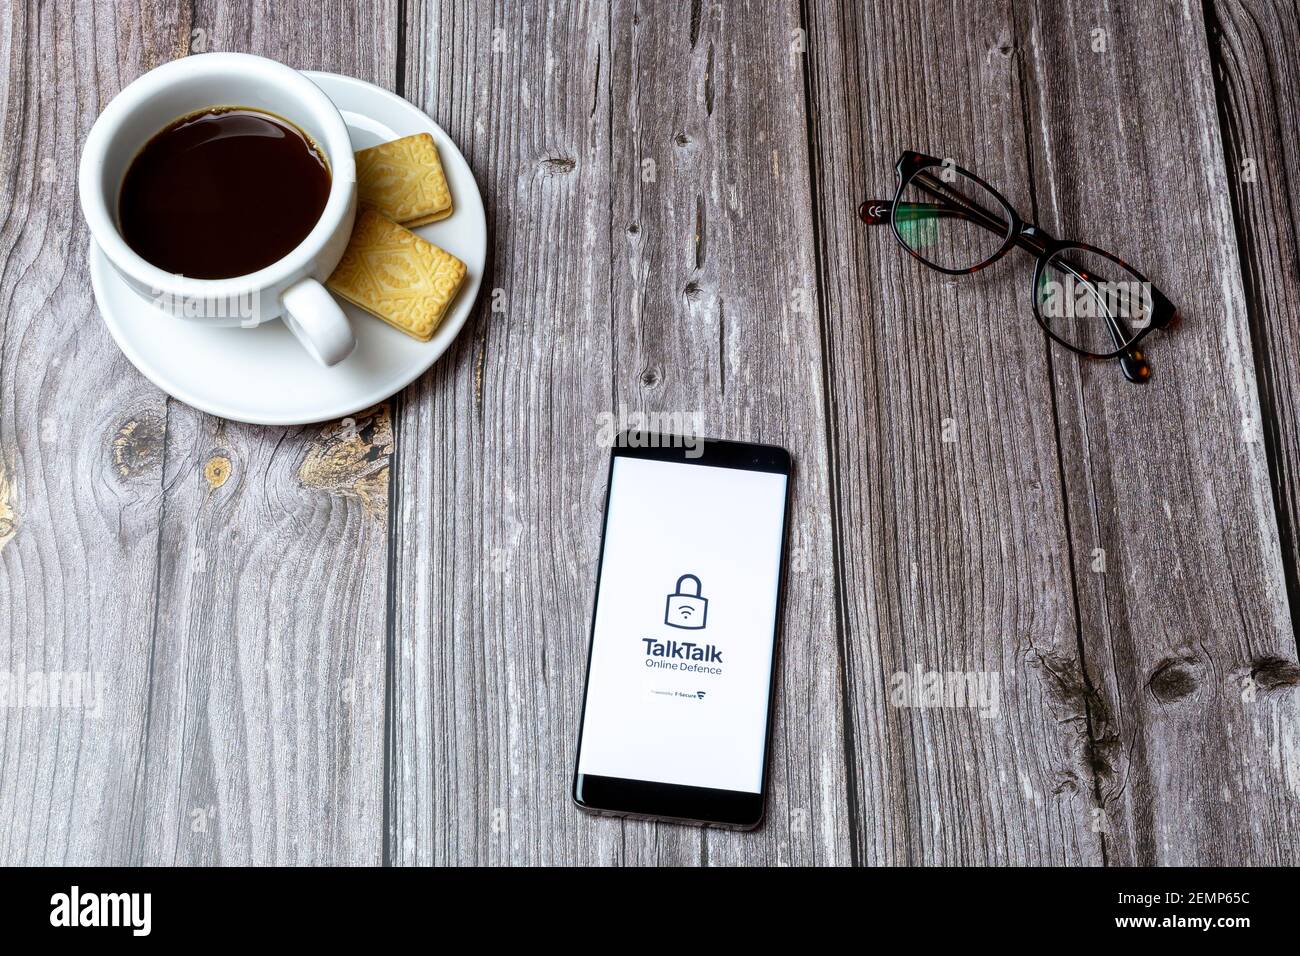 Un telefono cellulare o cellulare su un tavolo di legno Con l'app Talk Talk Mobile aperta accanto a caffè e bicchieri Foto Stock